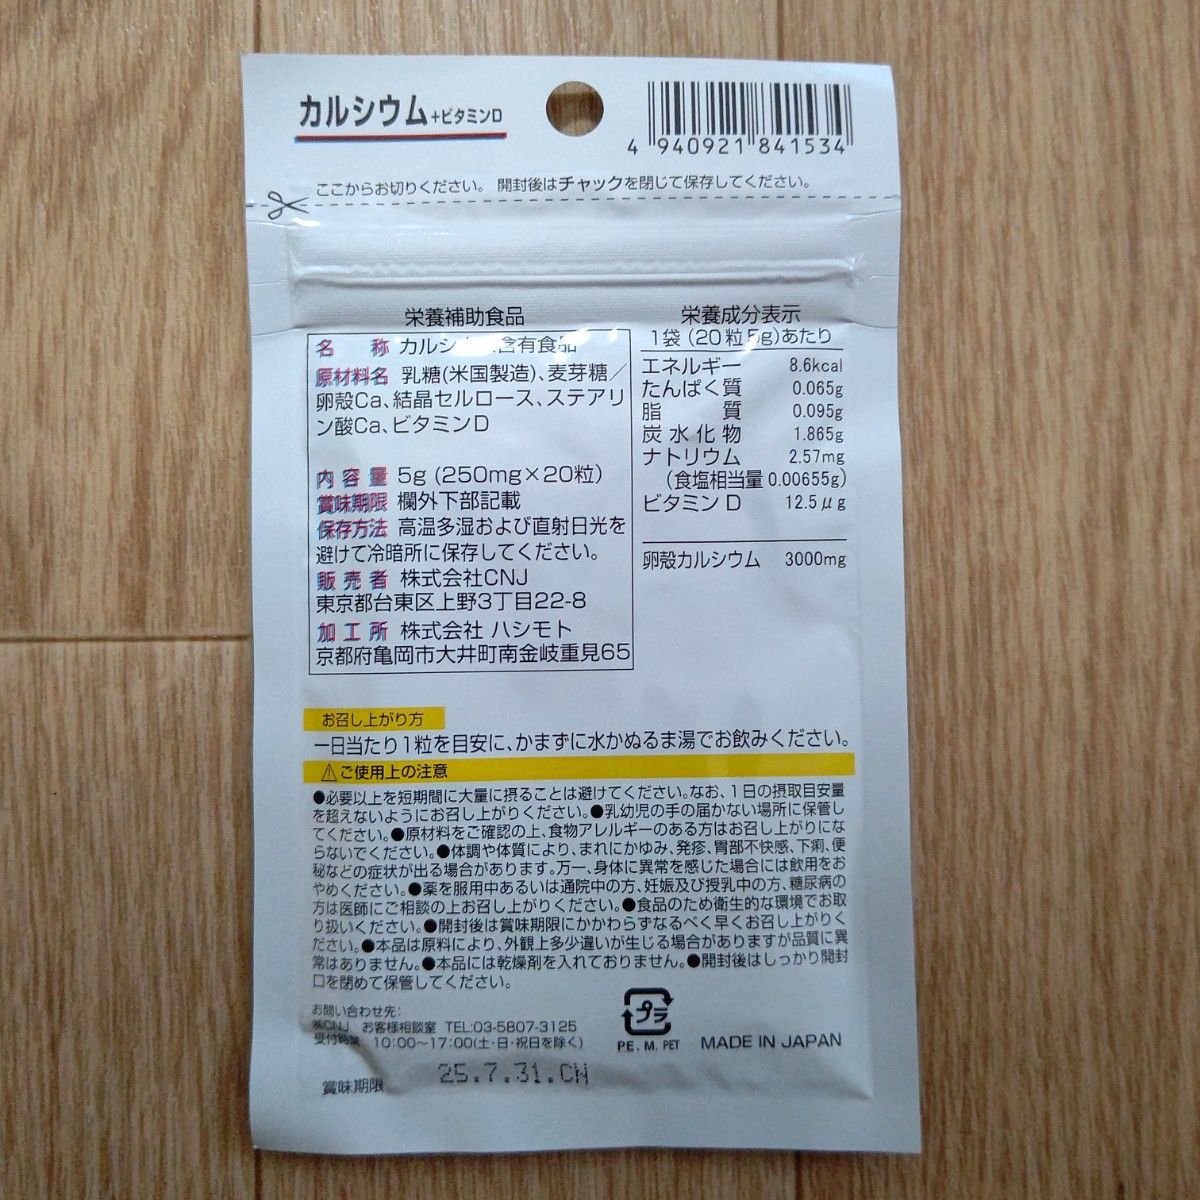 カルシウム＋ビタミンD サプリメント 3袋 日本製